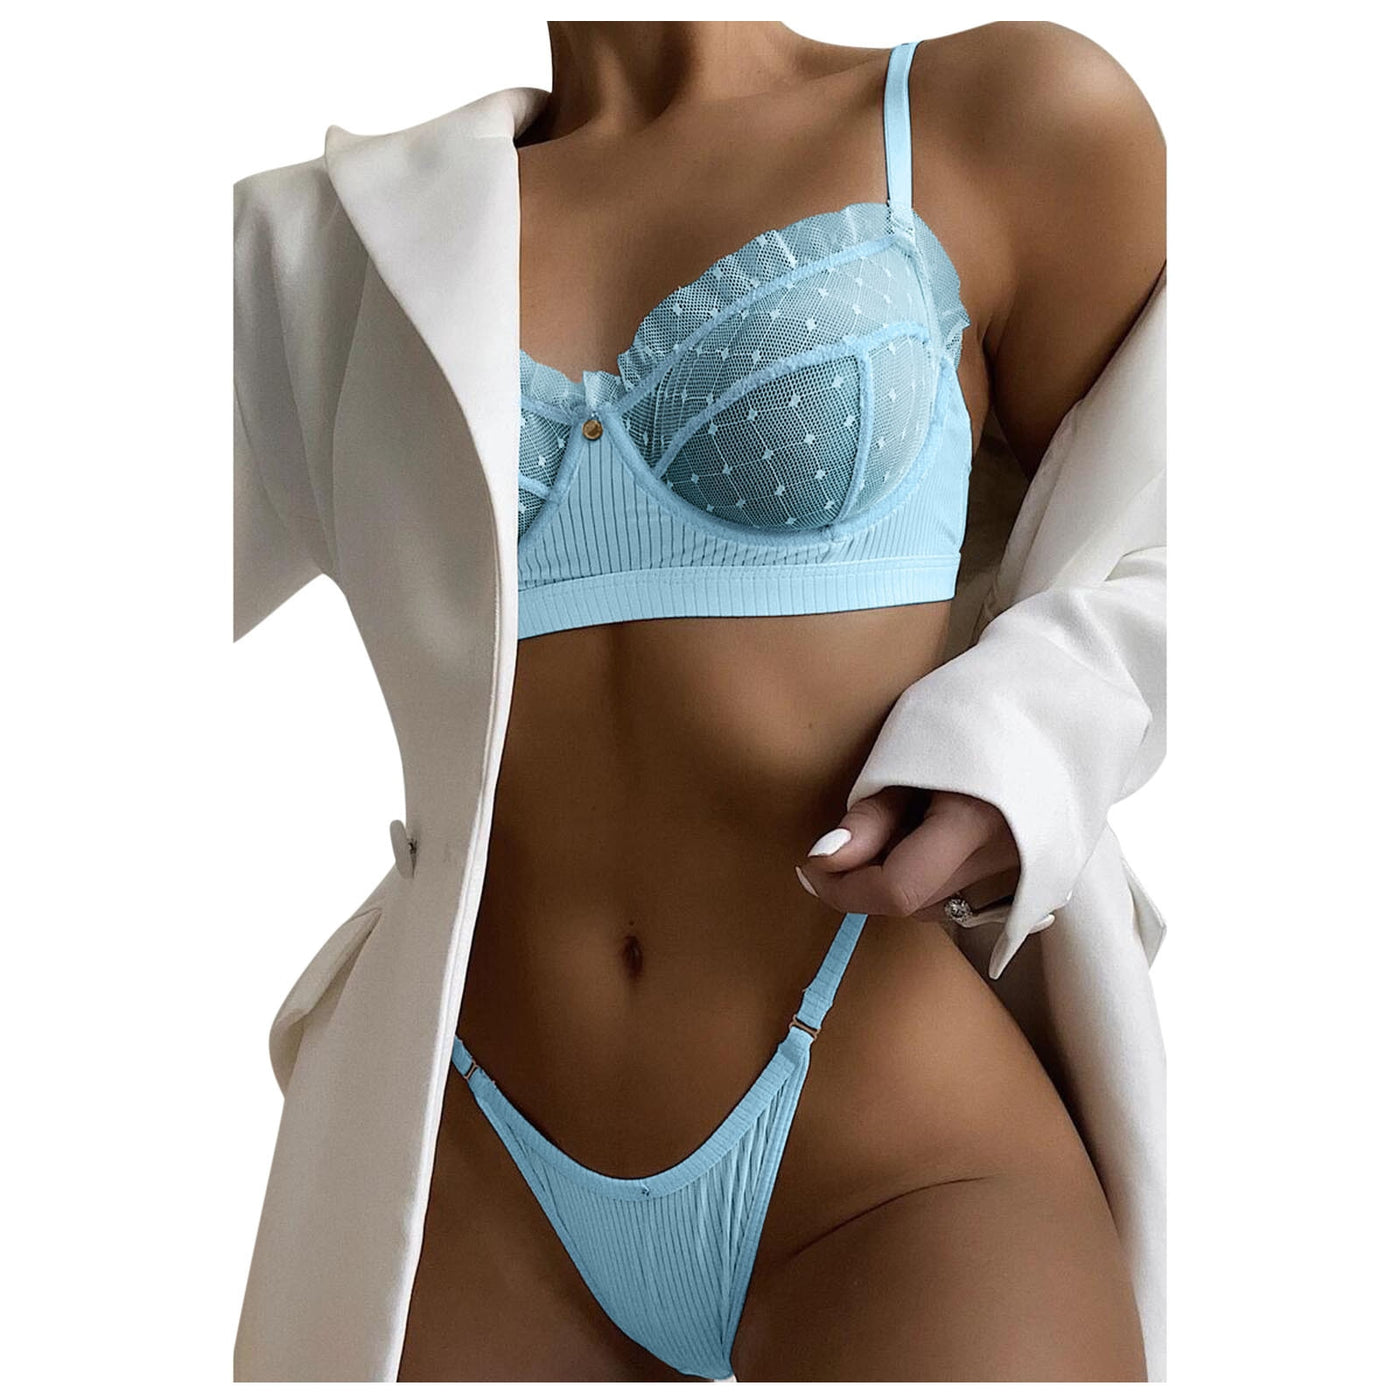 Mesh Lace Lingerie 2 Piece Women Underwear Set Transparent Bras Panty Brief Sets - toys-3366